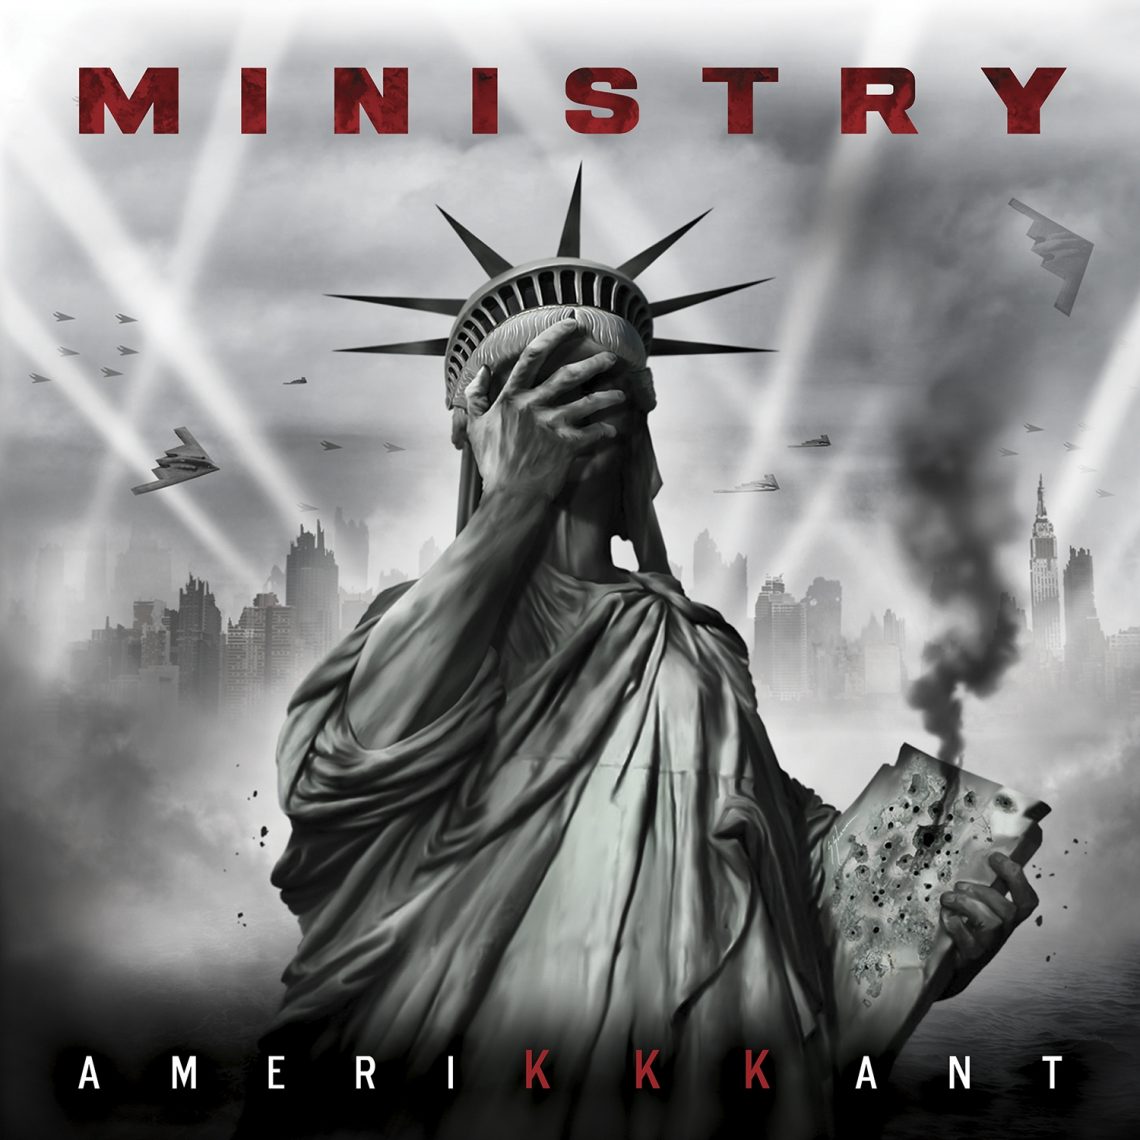 Ministry – “AmeriKKKant”